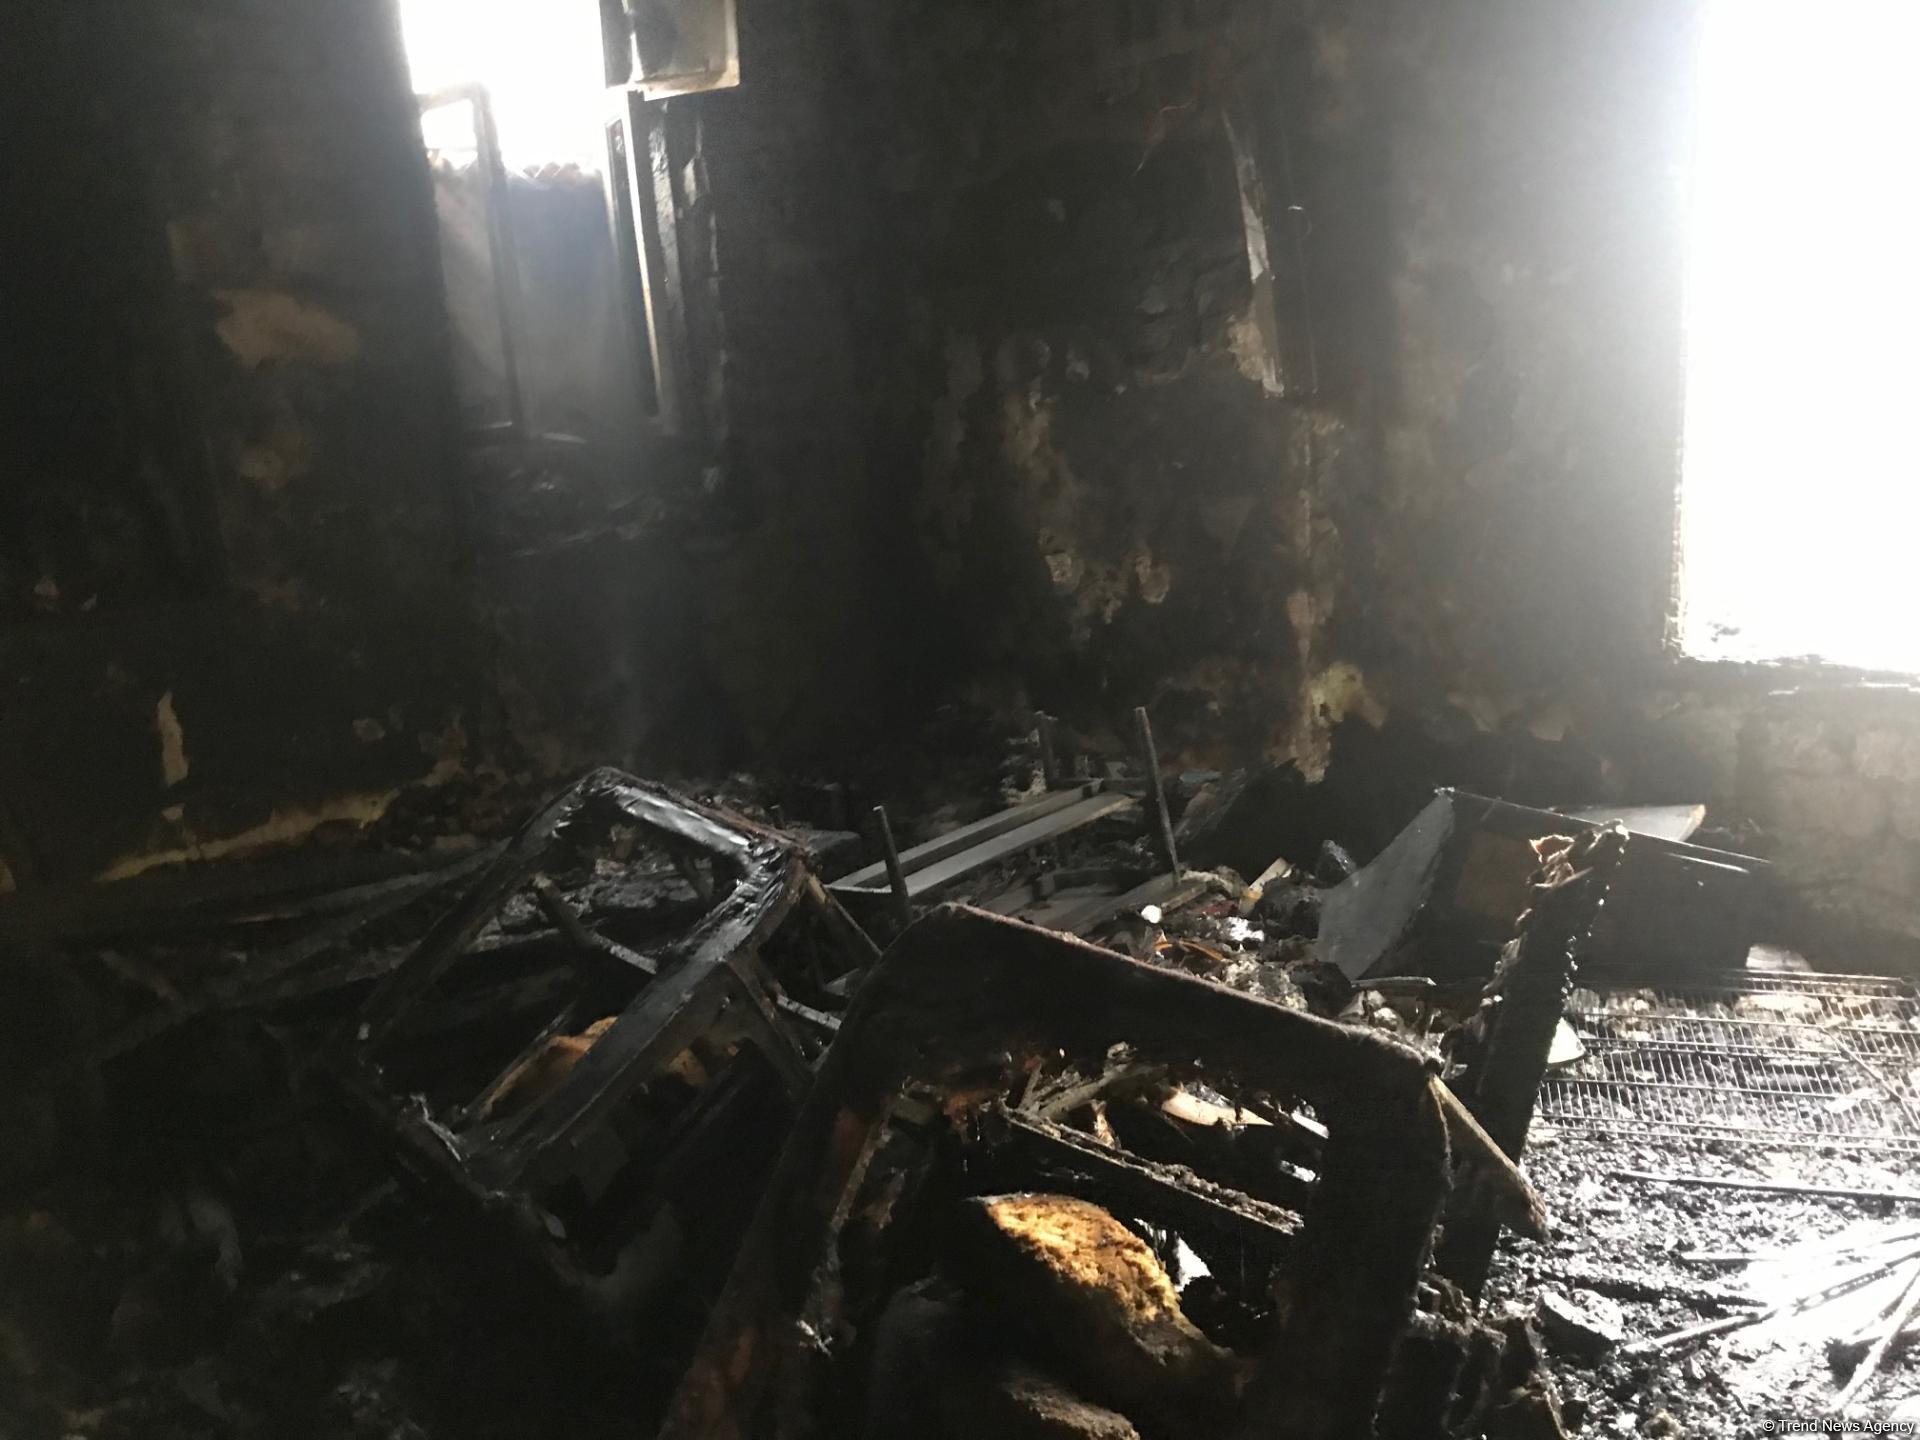 В Баку произошел взрыв в жилом доме - есть погибшие (ФОТО/ВИДЕО)